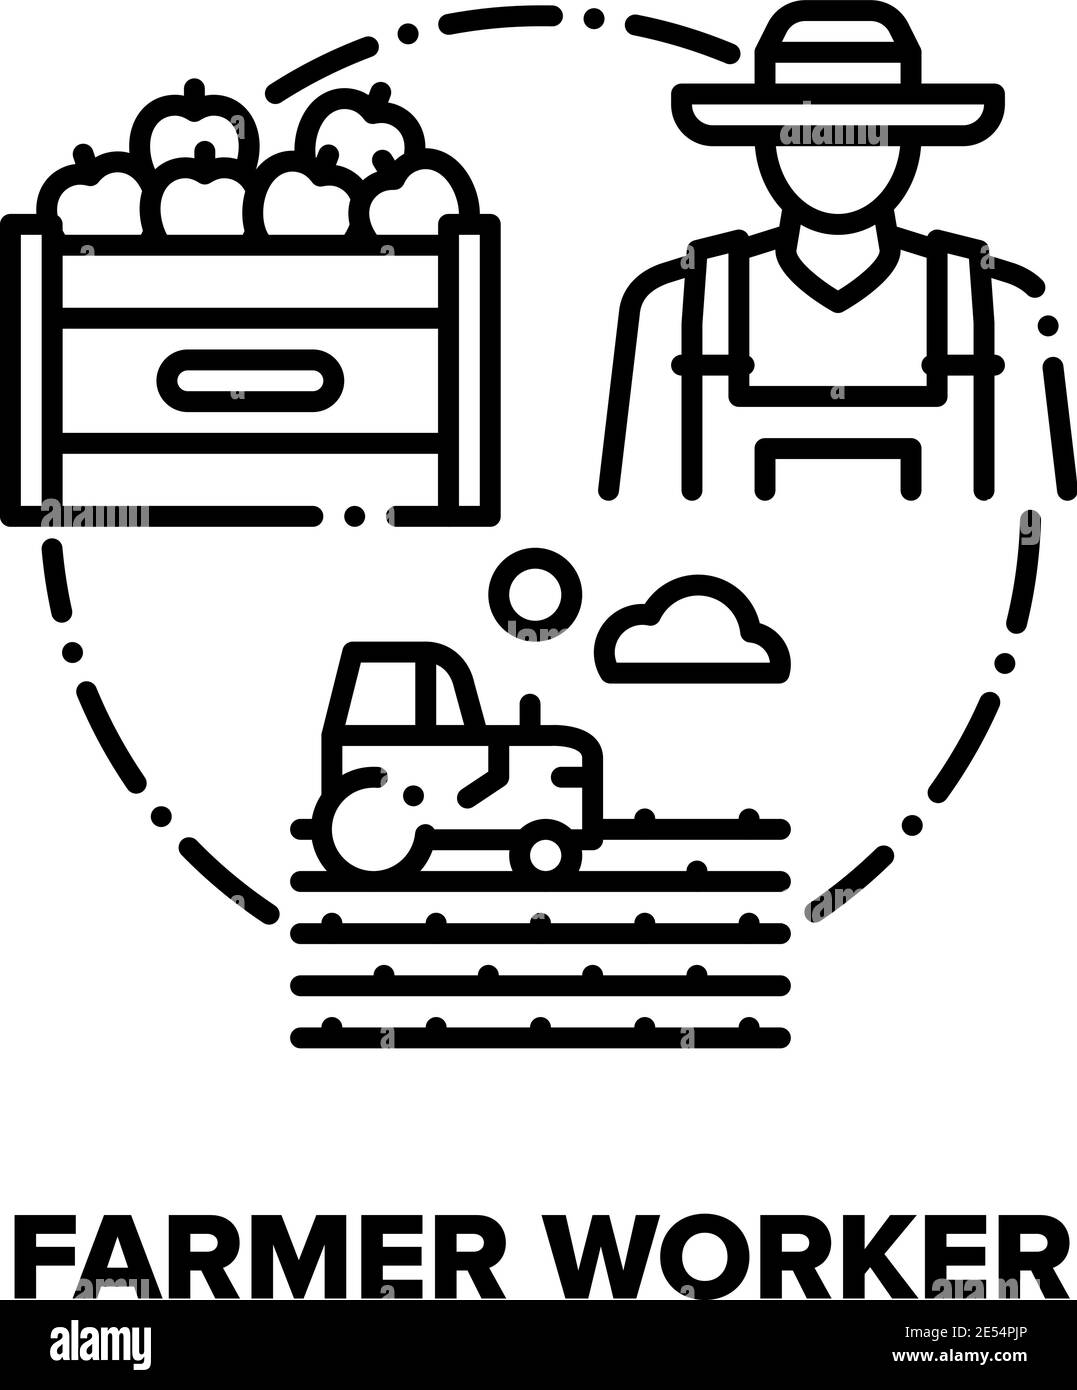 Farmer Worker Vektor-Konzept Schwarze Illustrationen Stock Vektor